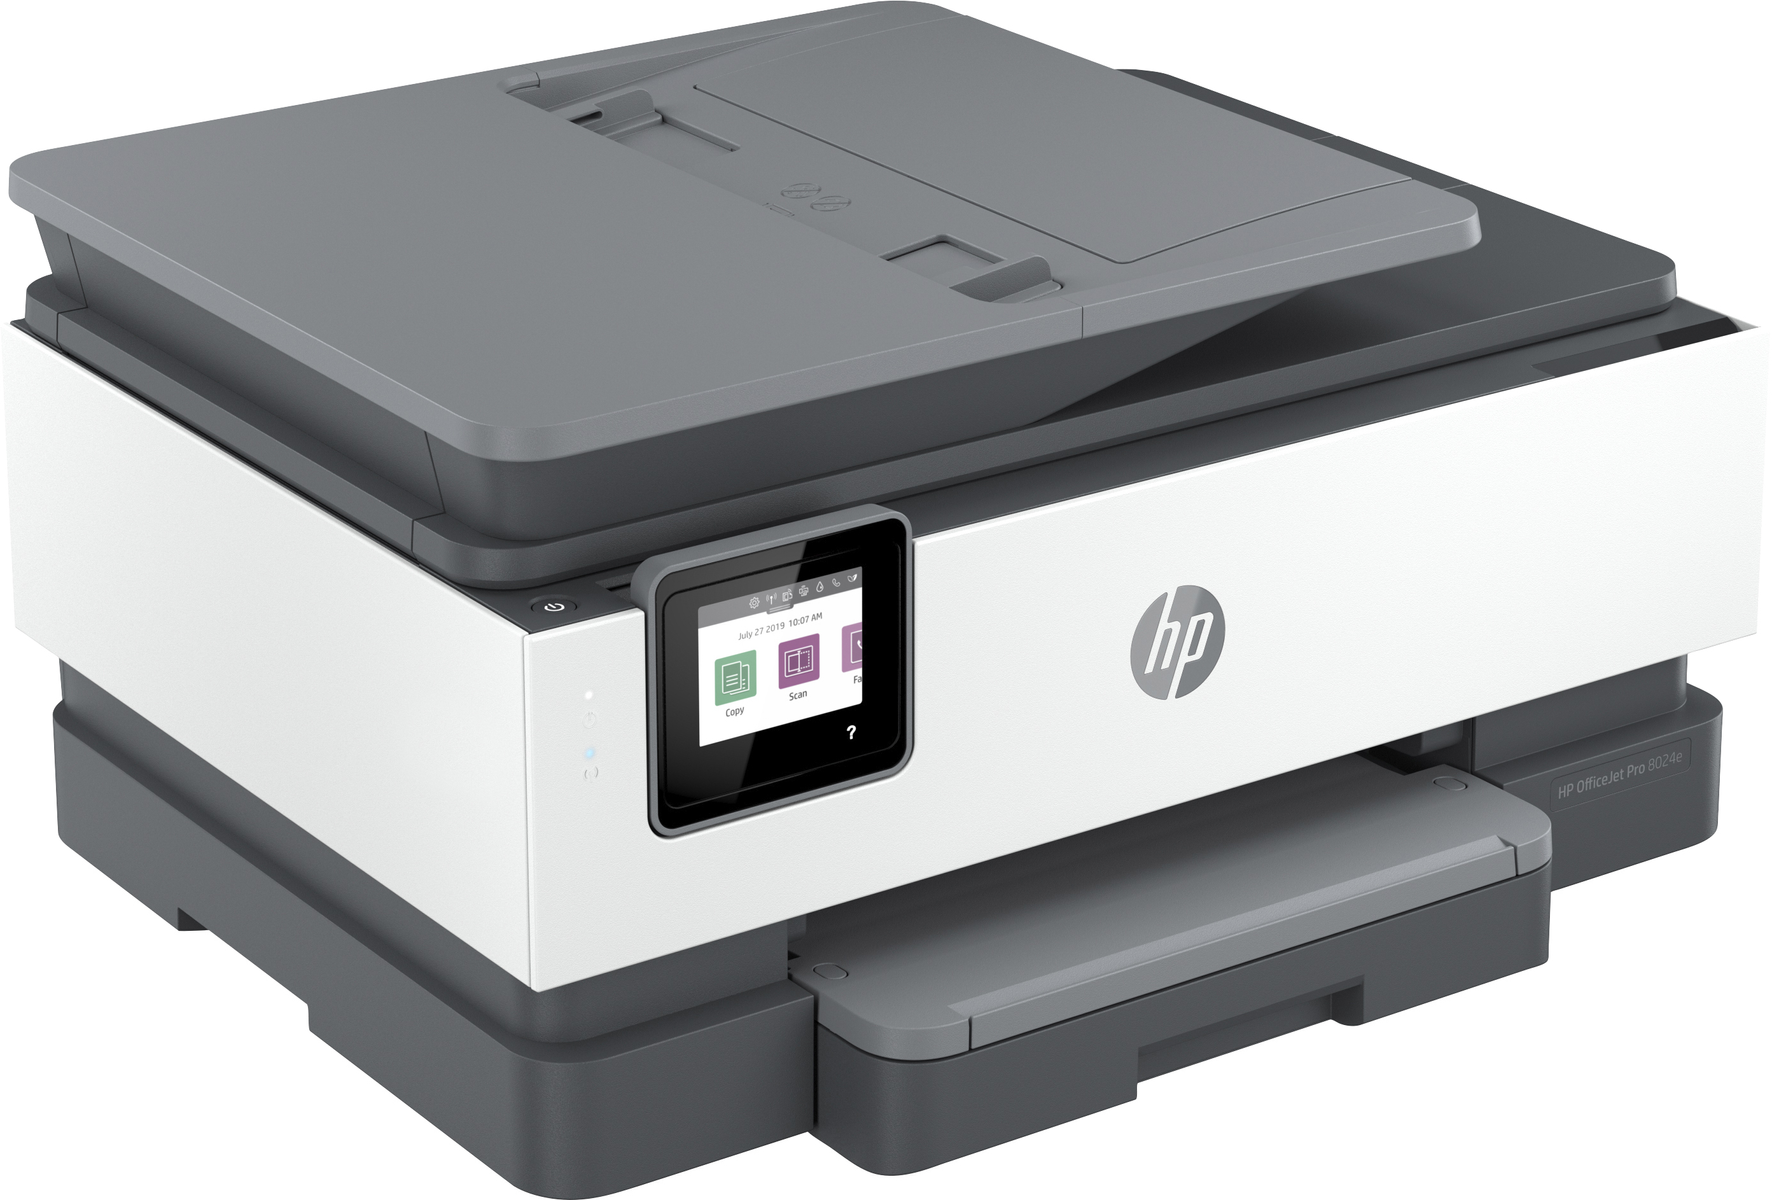 Thermal 8024E PRO AIO Netzwerkfähig OFFICEJET Inkjet COLOR Multifunktionsdrucker HP WLAN